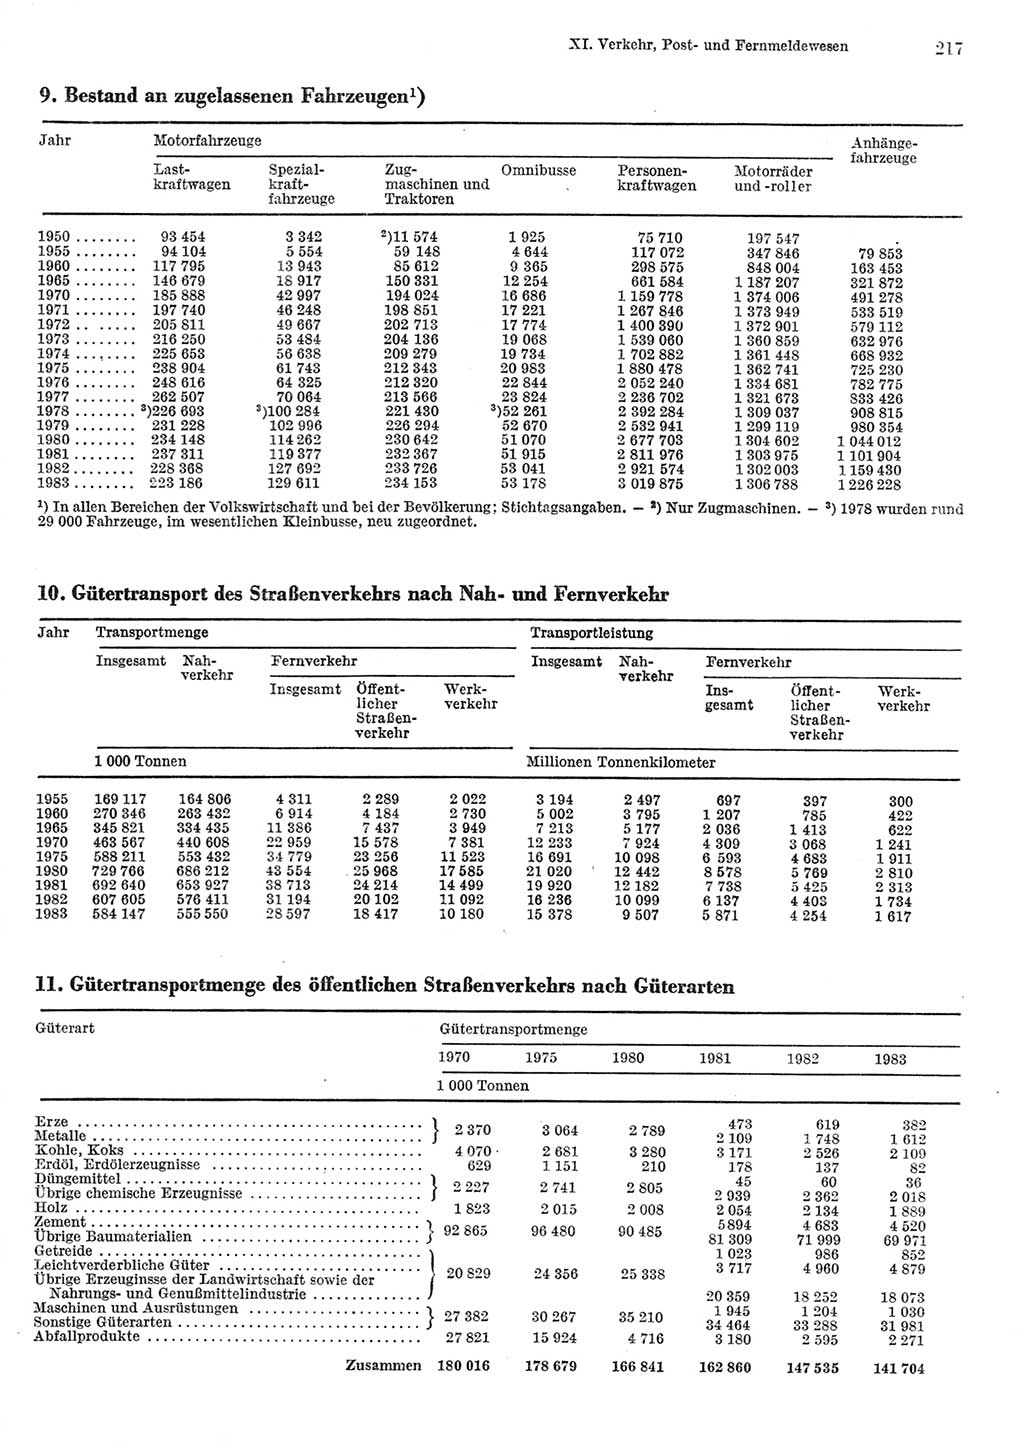 Statistisches Jahrbuch der Deutschen Demokratischen Republik (DDR) 1984, Seite 217 (Stat. Jb. DDR 1984, S. 217)